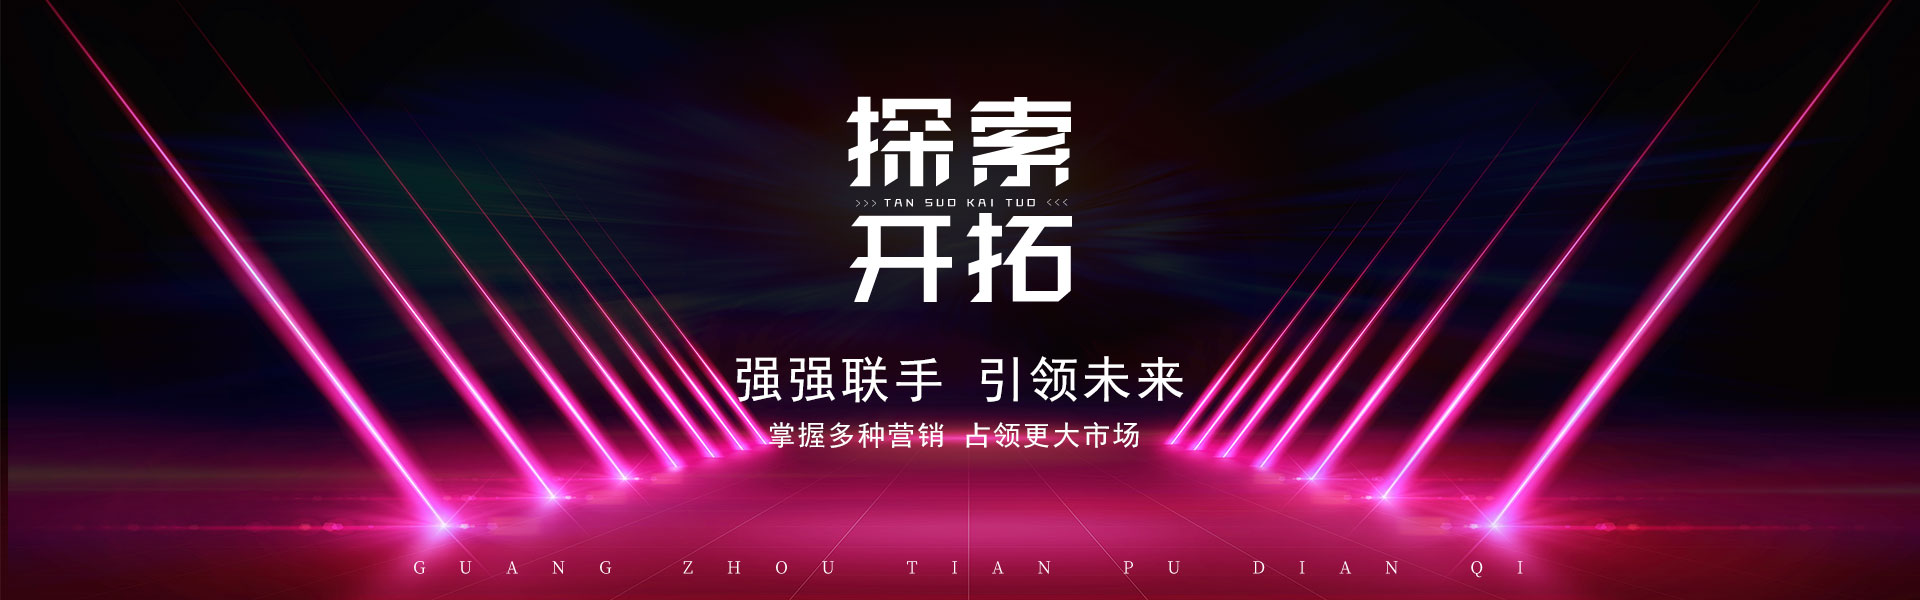 VI系统_广州市天谱电器有限公司万利达品牌网站